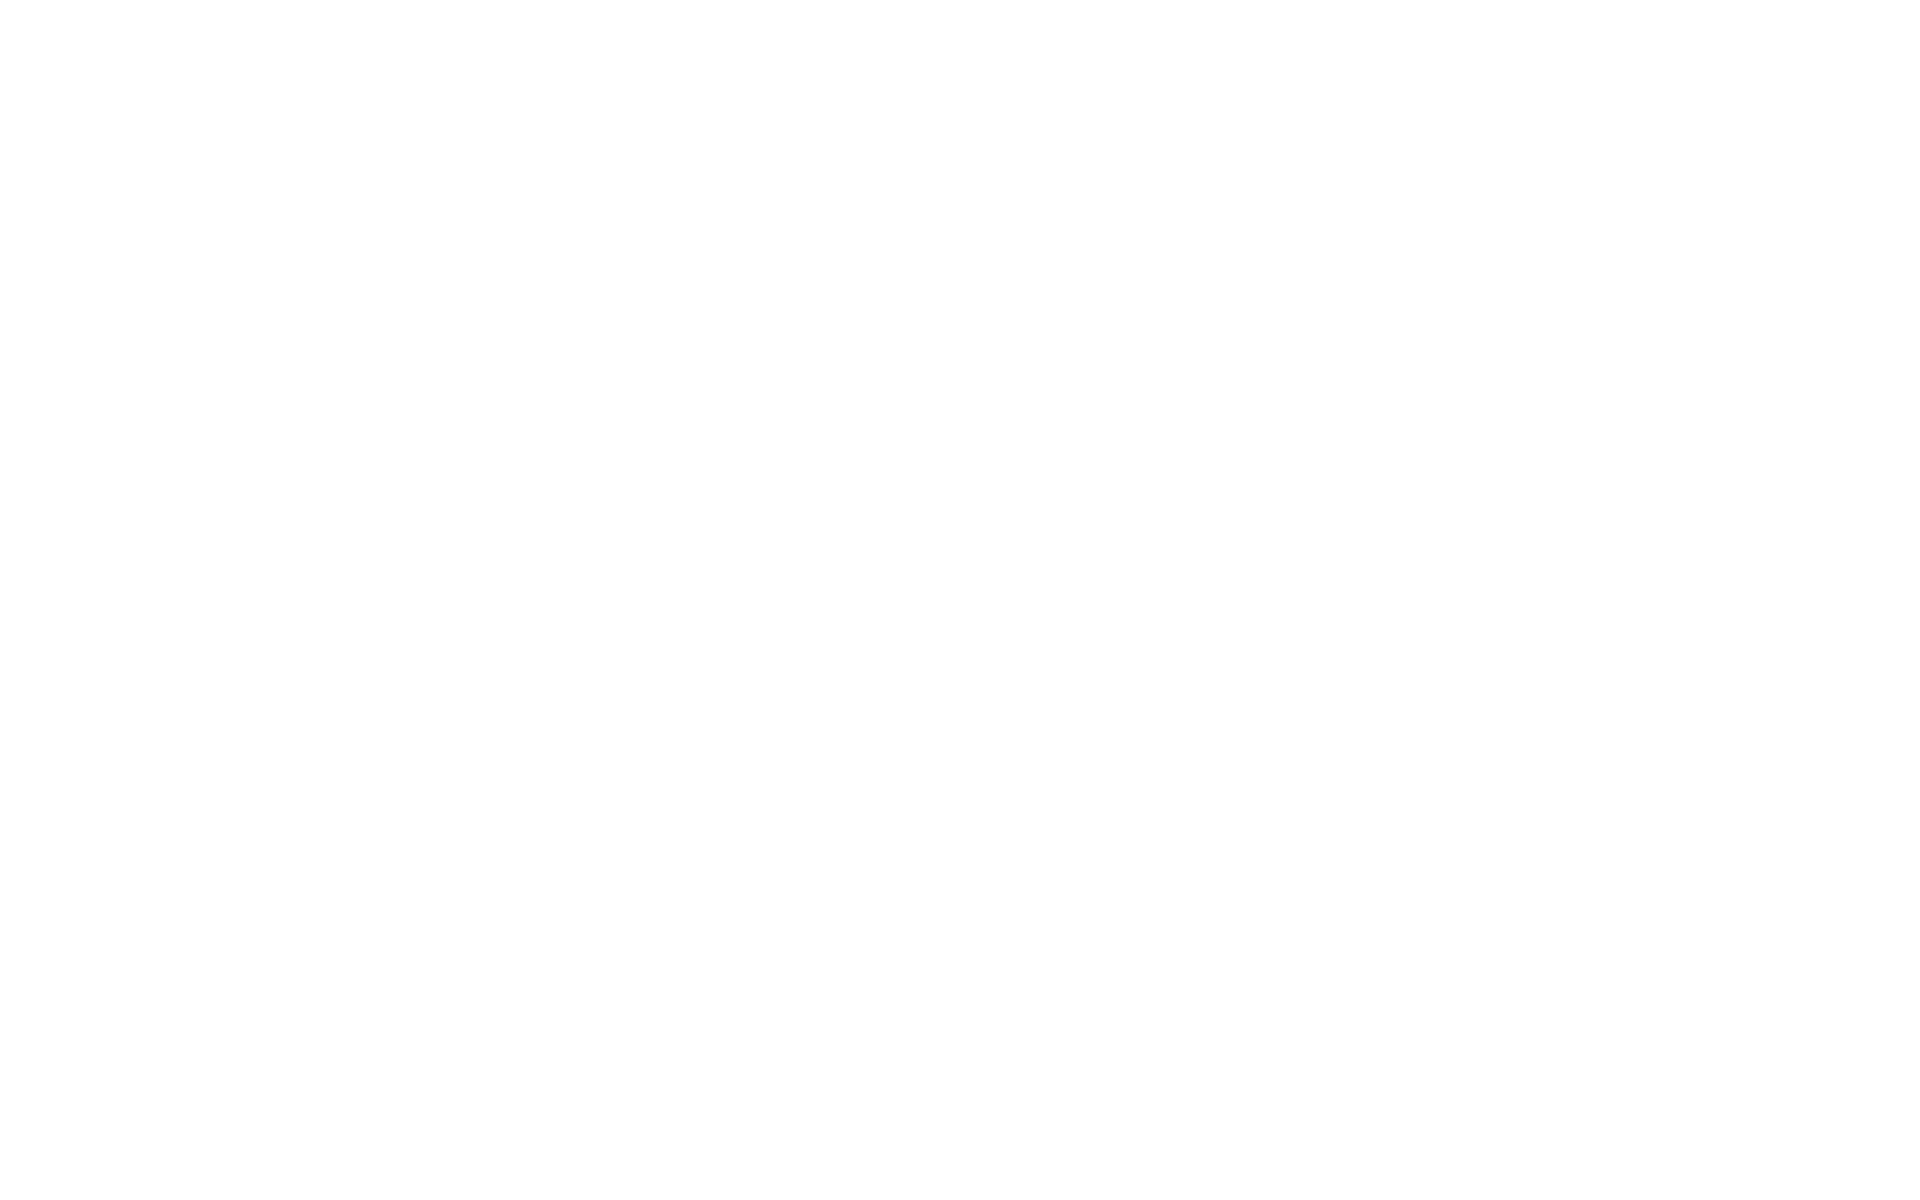 Belen Public Library Facebook